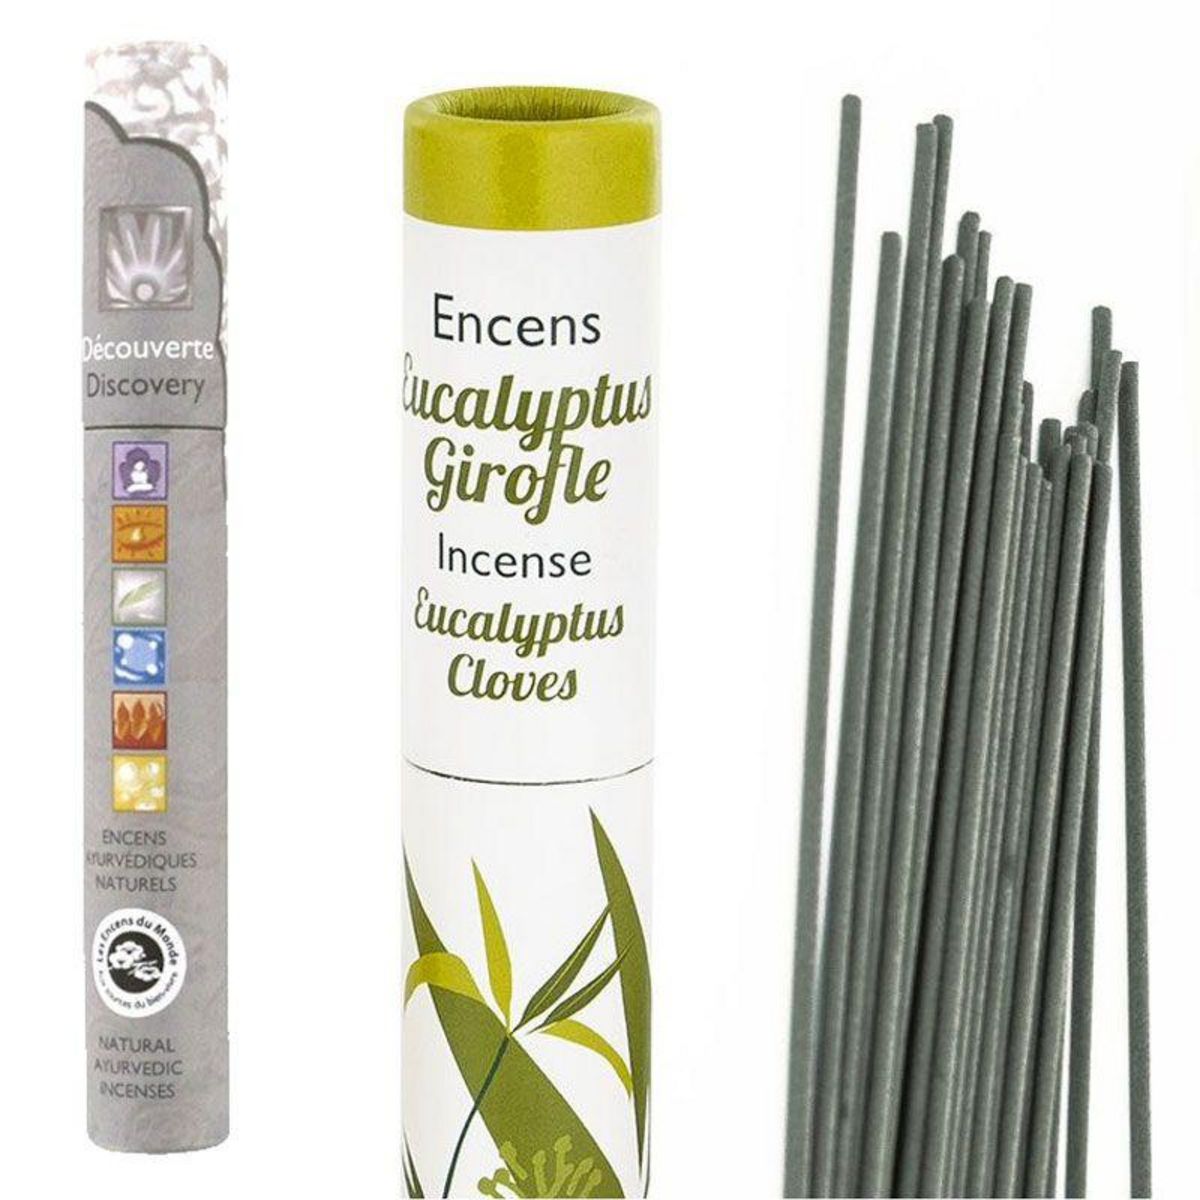 Les Encens du monde Encens Eucalyptus-Girofle 30 bâtonnets + encens ayurvédique 14 bâtonnets